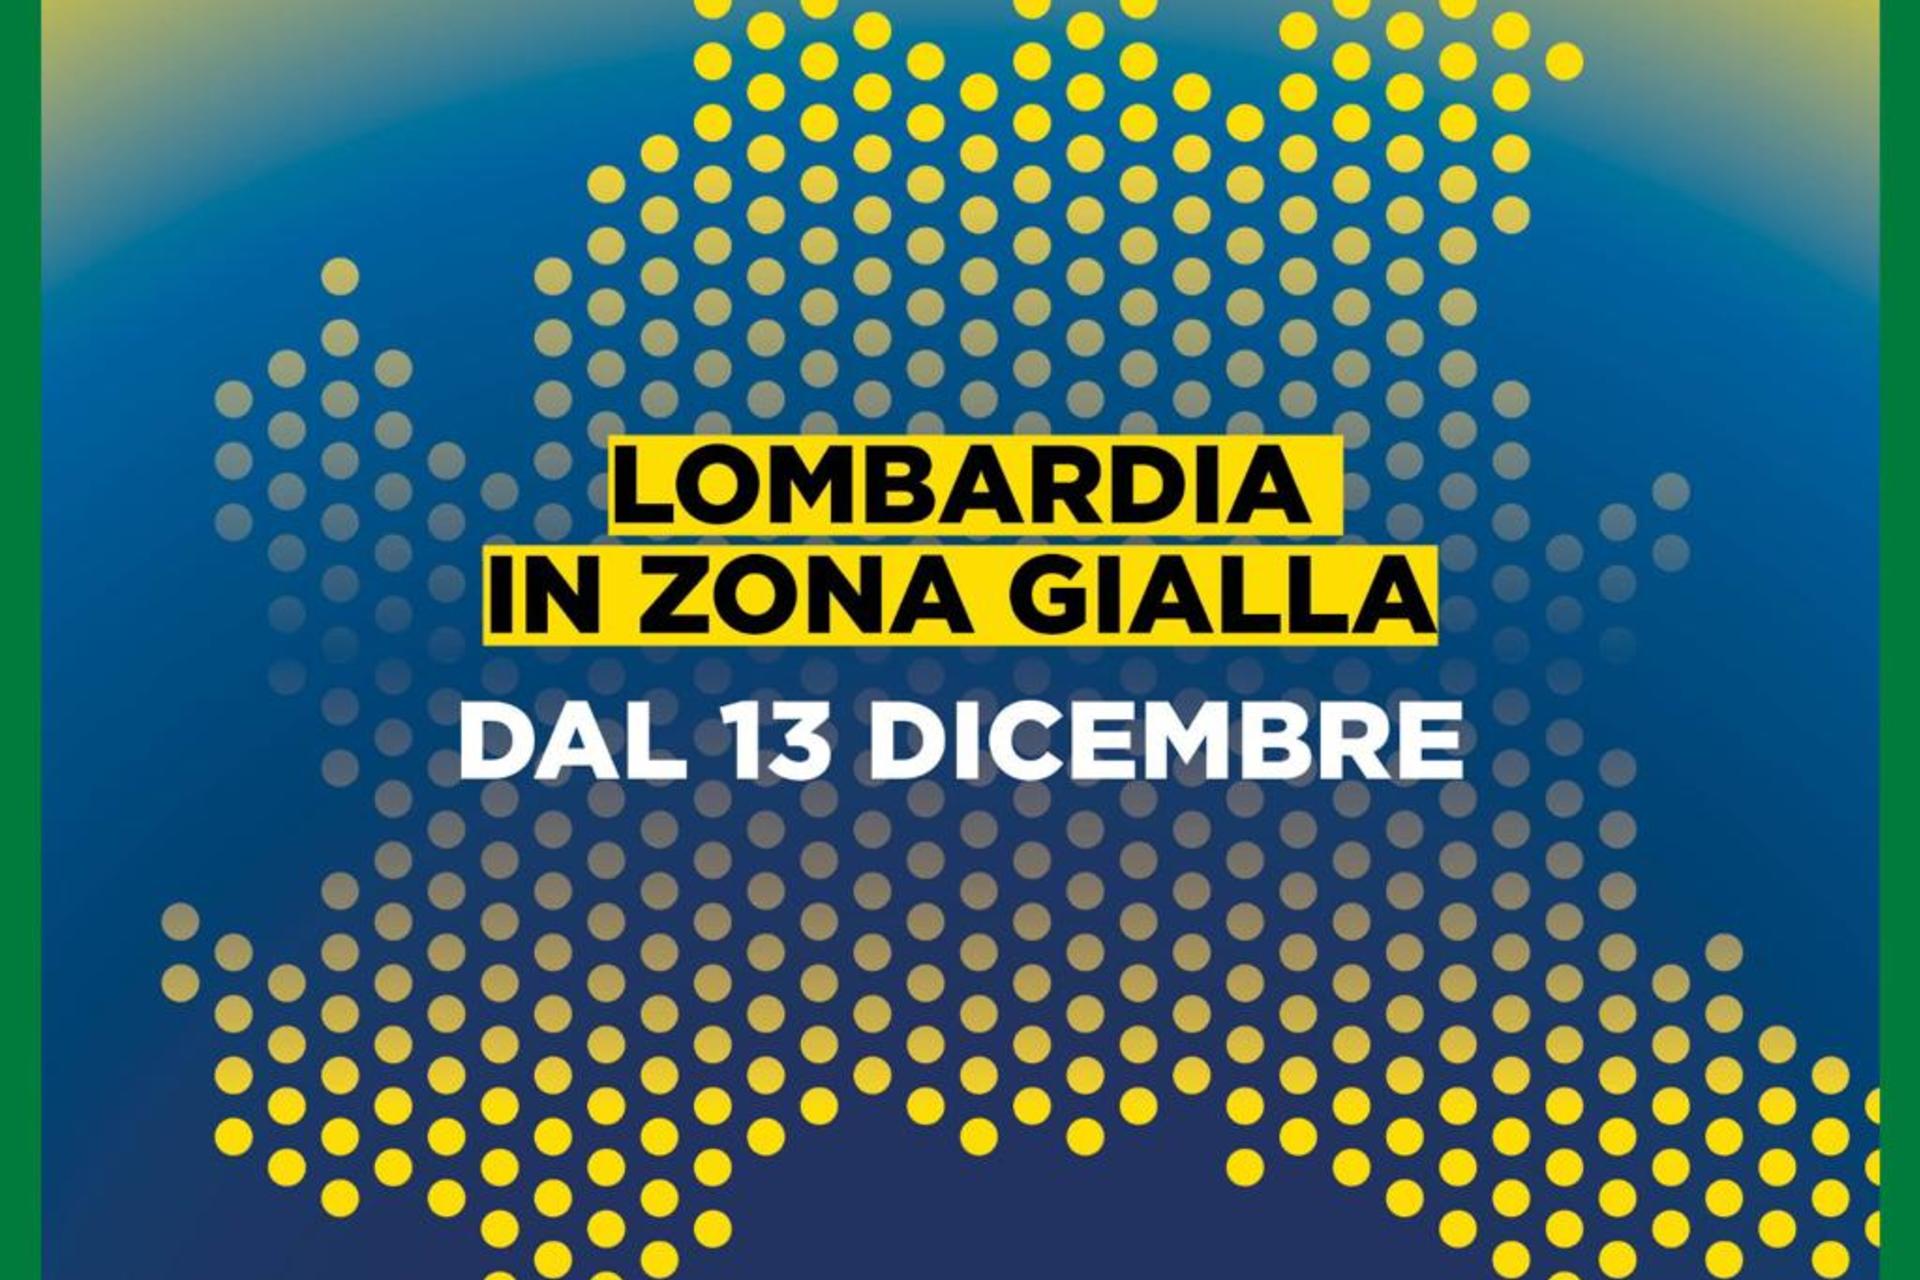 Dal 13 dicembre 2020 la Lombardia è in zona gialla